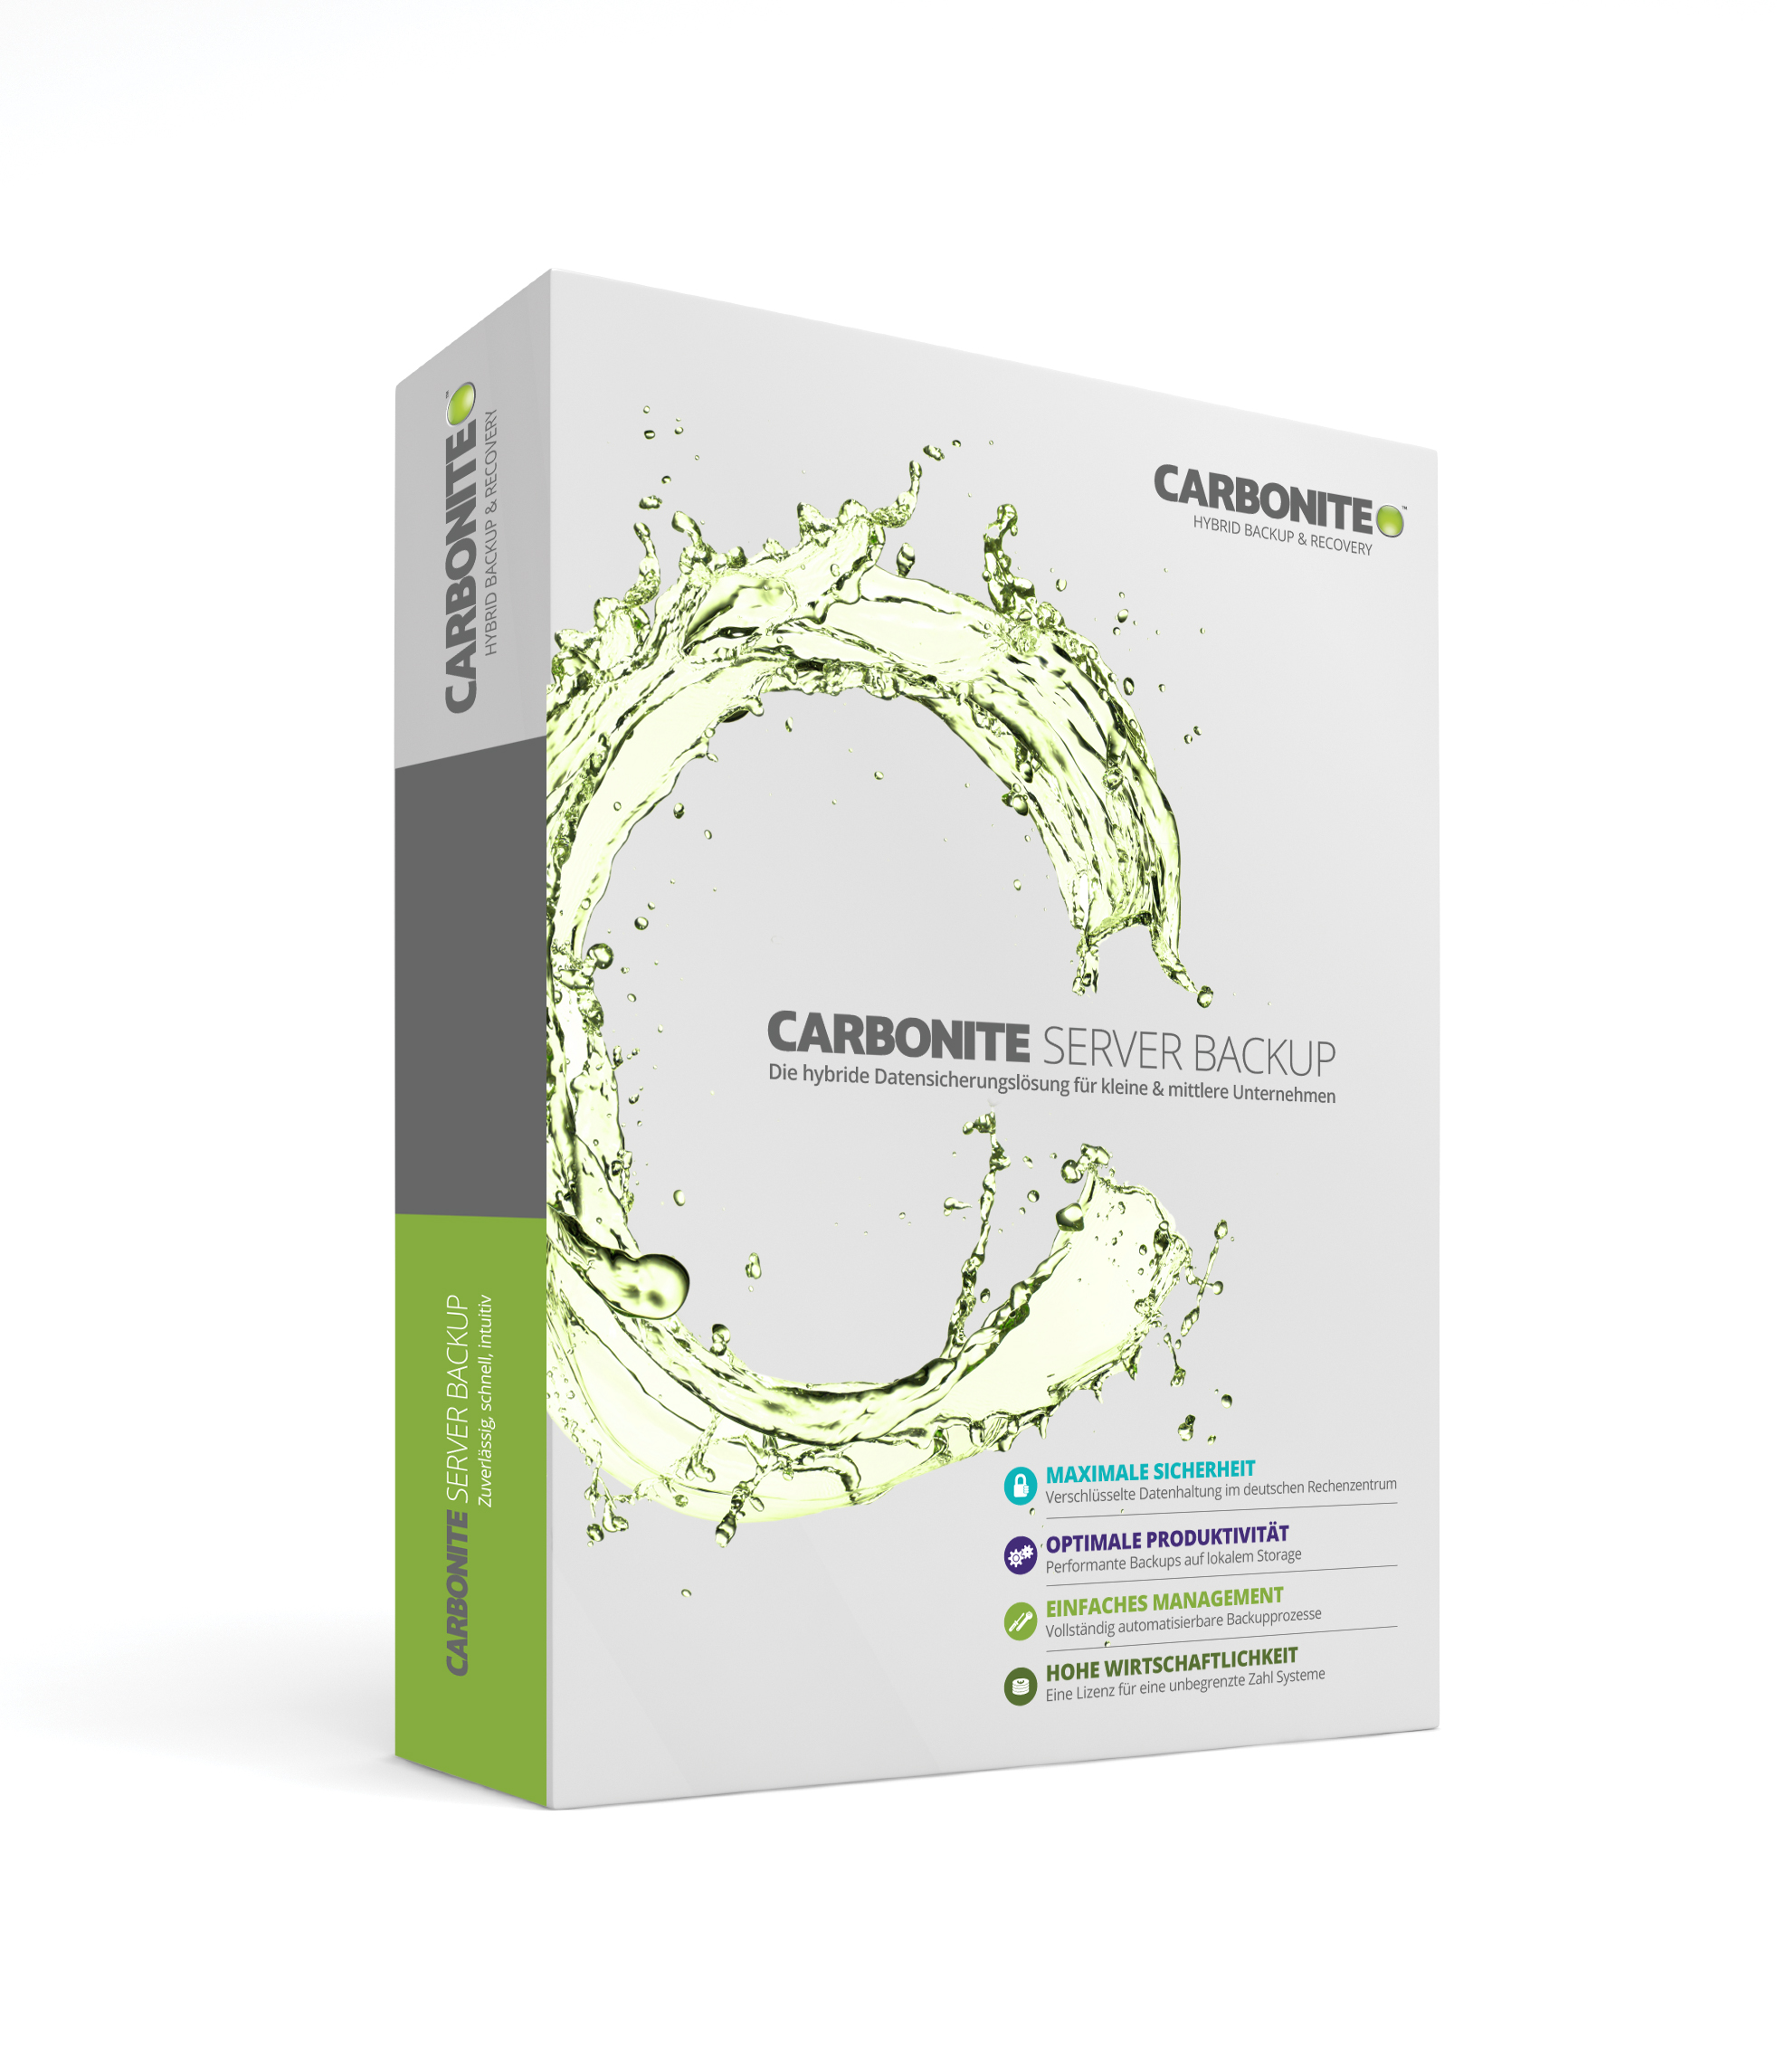 carbonite review